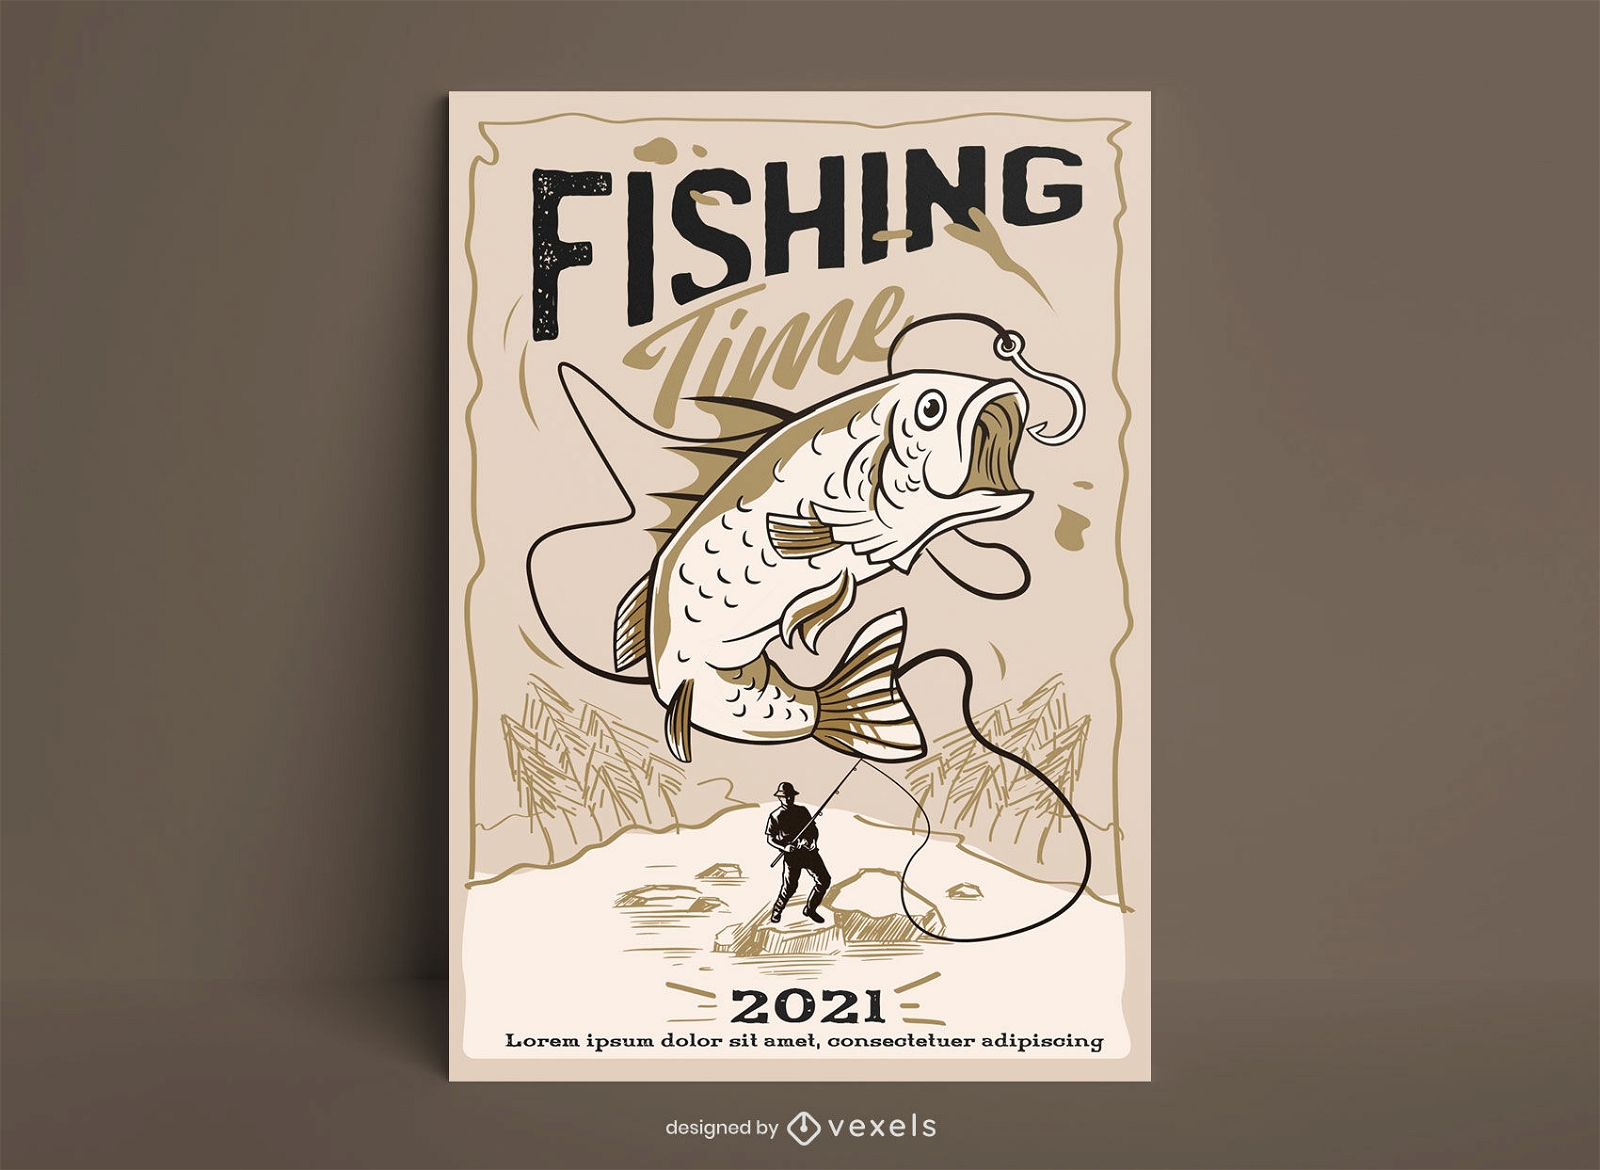 Cartaz de ilustração de passatempo de pesca